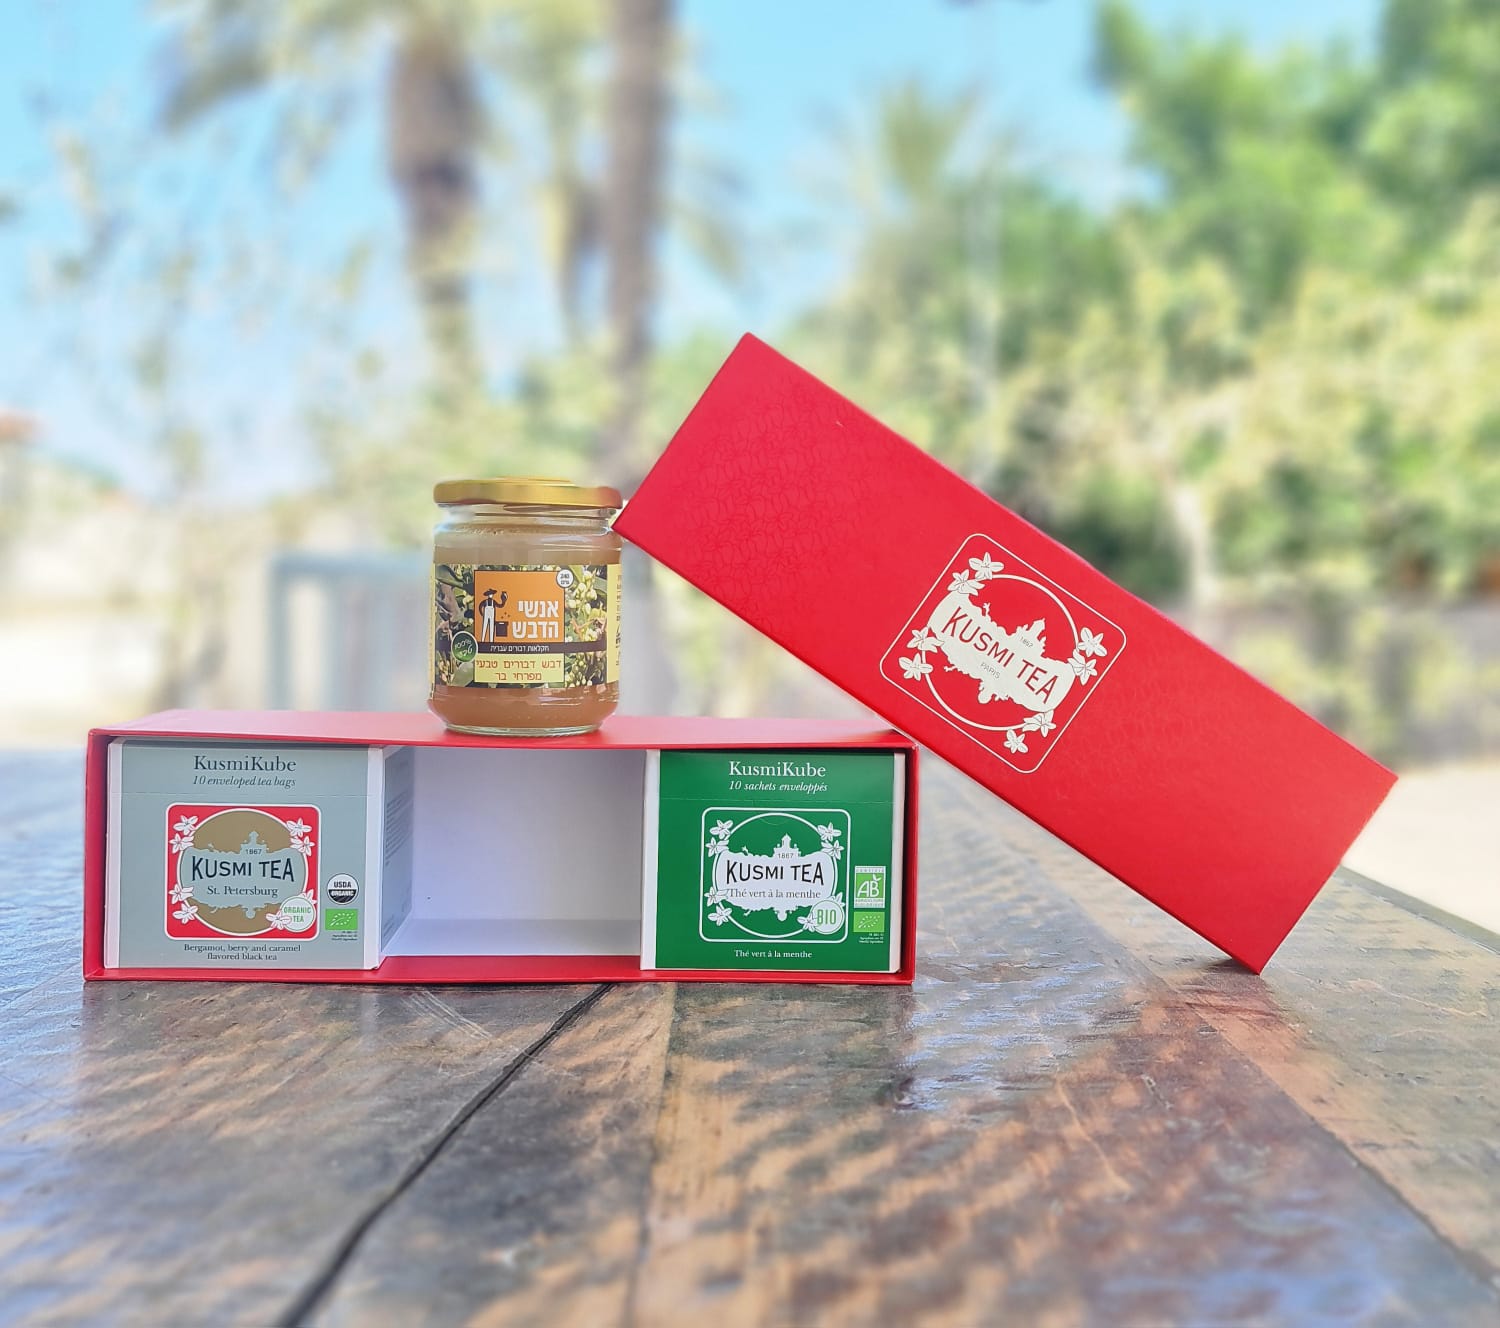 מארז אדום - מארז קרטון מעוצב המכיל:
דבש דבורים טבעי 240 גרם.
2 קוביות תה איכותי שחור אורגני (ארל גריי), 10 תיונים בכל קוביה. 